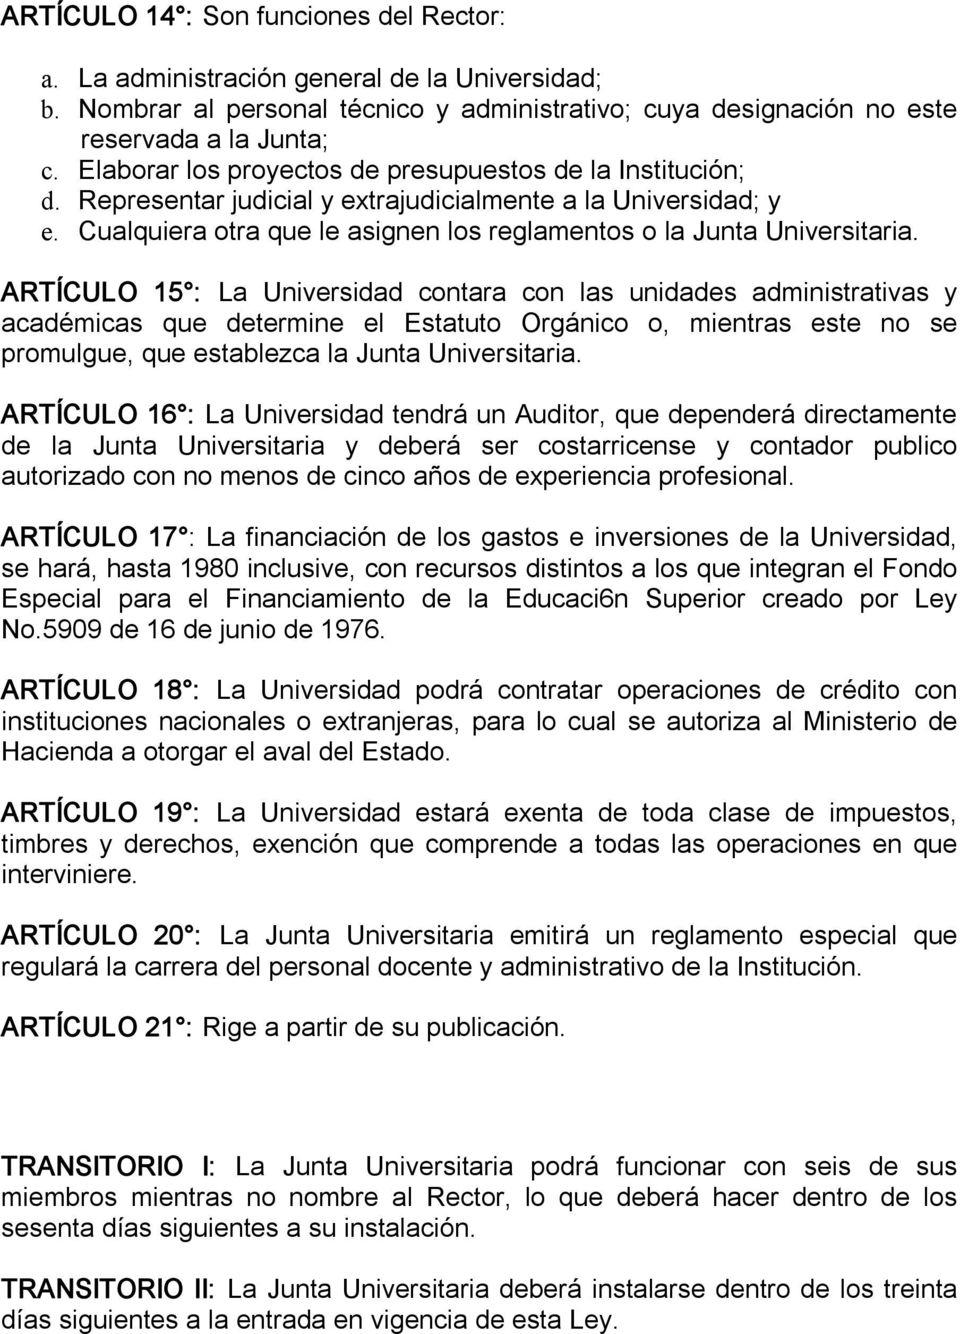 ARTÍCULO 15 : La Universidad contara con las unidades administrativas y académicas que determine el Estatuto Orgánico o, mientras este no se promulgue, que establezca la Junta Universitaria.